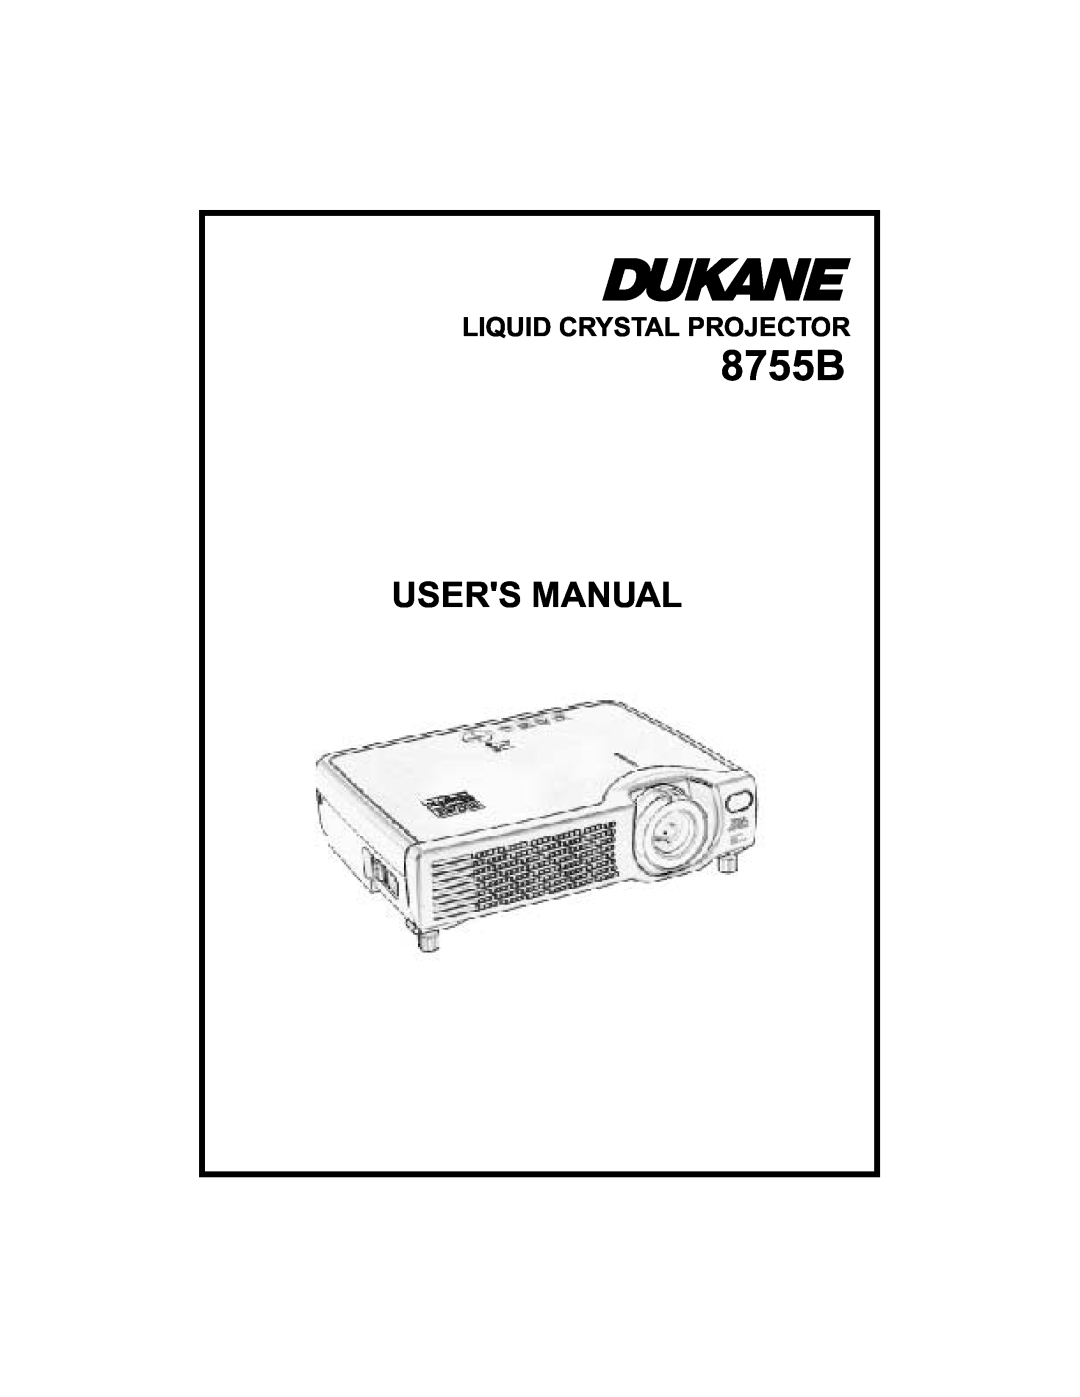 Dukane 8755B user manual Users Manual, Liquid Crystal Projector 